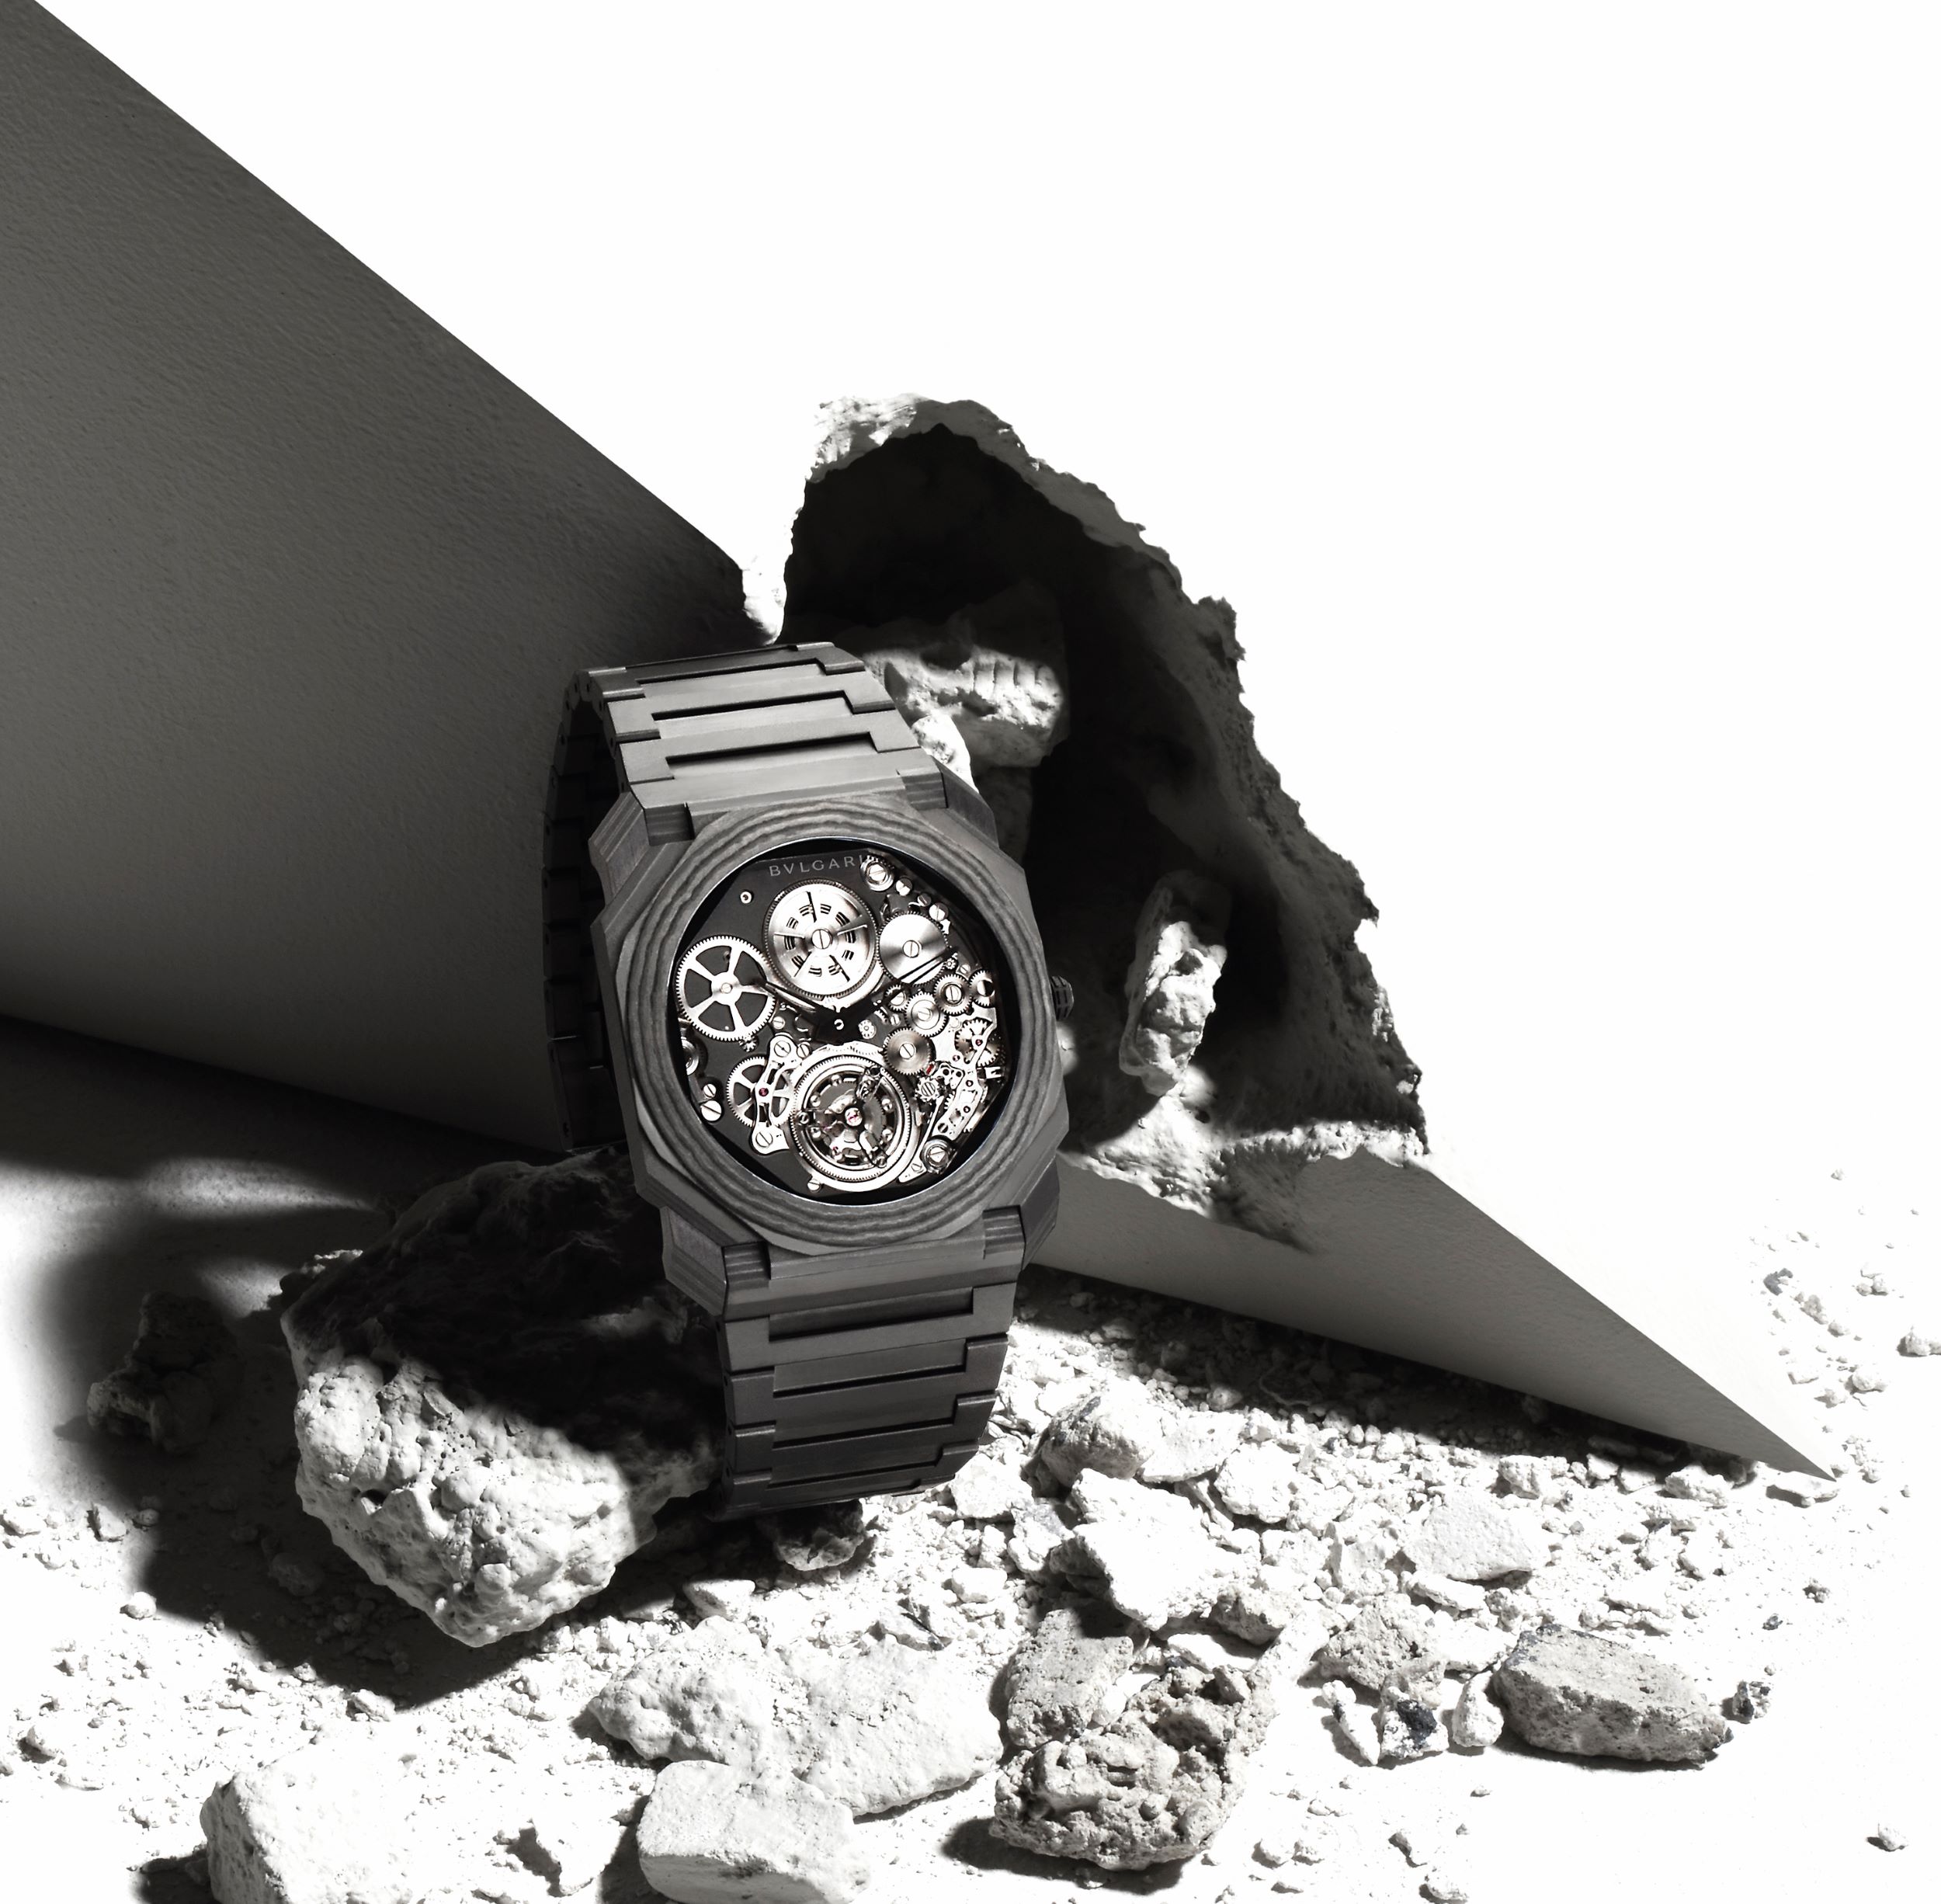 回顧任職瑞士製錶品牌 10 年以上的資歷，Jean-Christophe Babin 認為寶格麗腕錶的存在是「瑞義工藝的結晶，也是瑞士錶的文藝復興」。耐用精準的機芯固然能成就一枚經典腕錶，如果腕錶設計雋永優雅，同樣具有流傳後世的價值。